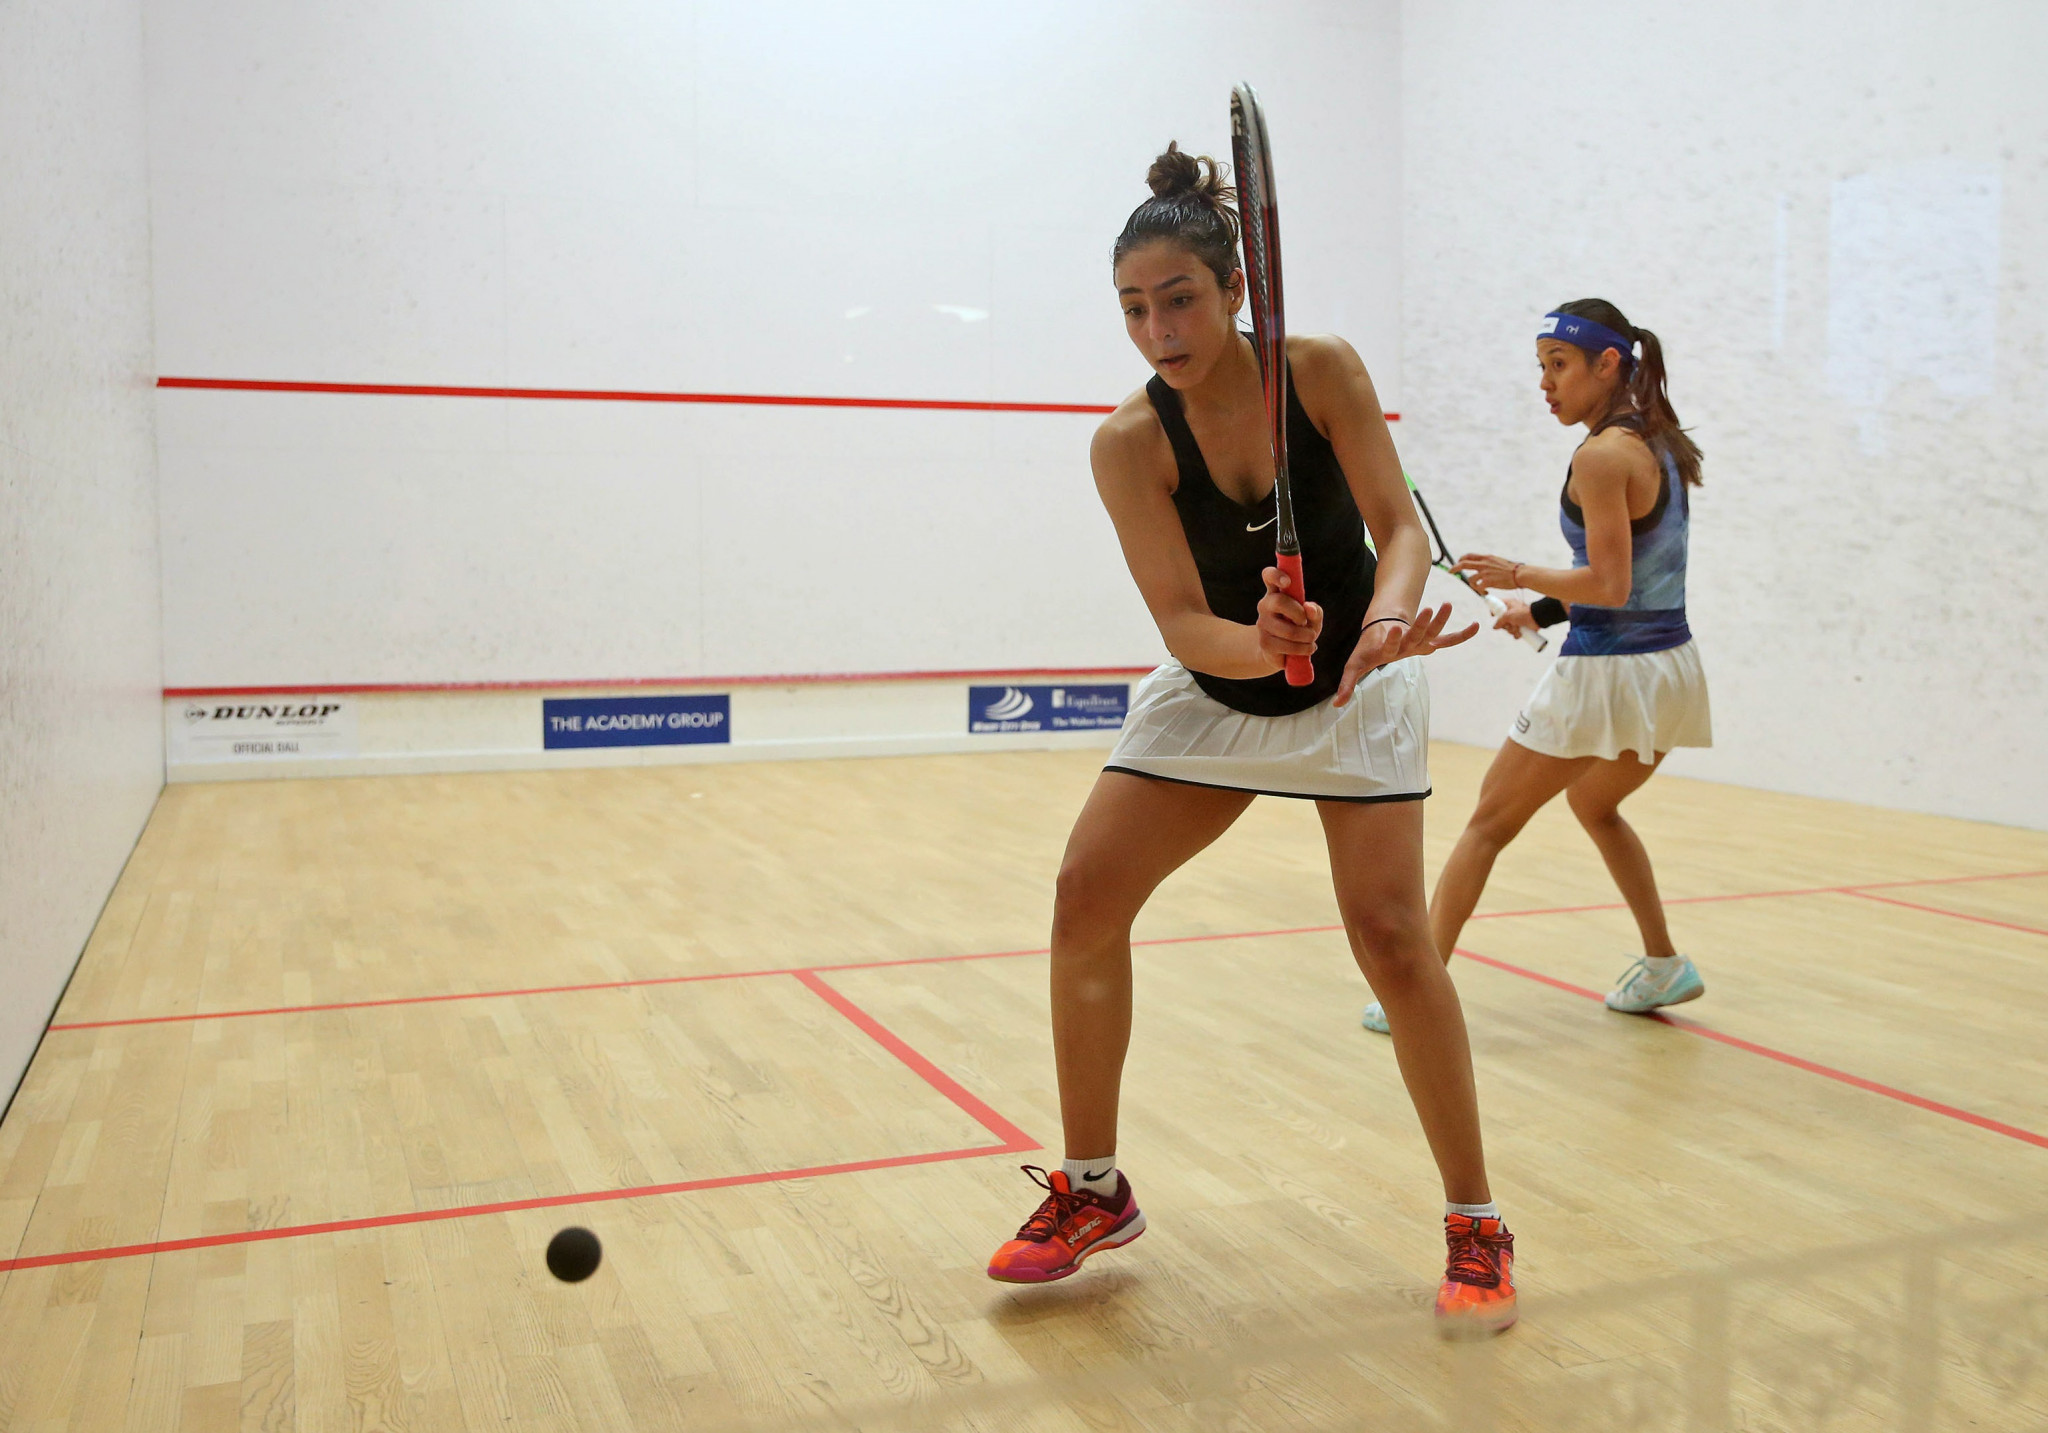 Hania El Hammamy earned a shock victory over Nicol David ©PSA